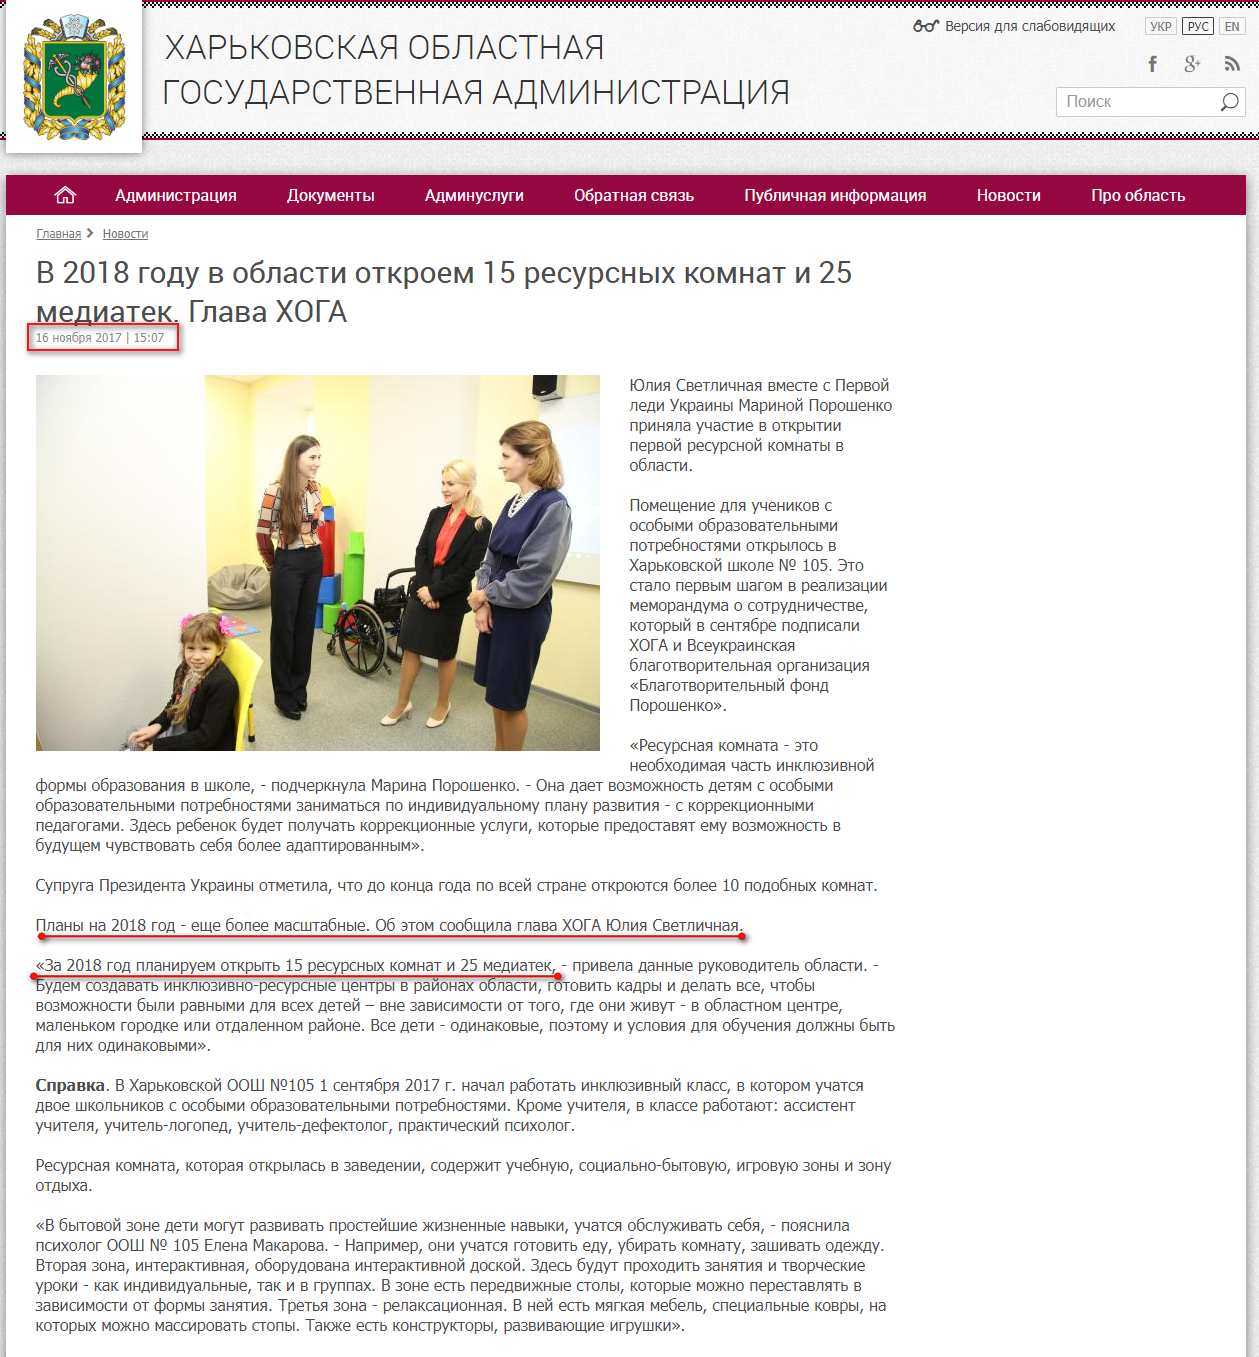 http://kharkivoda.gov.ua/ru/news/89599